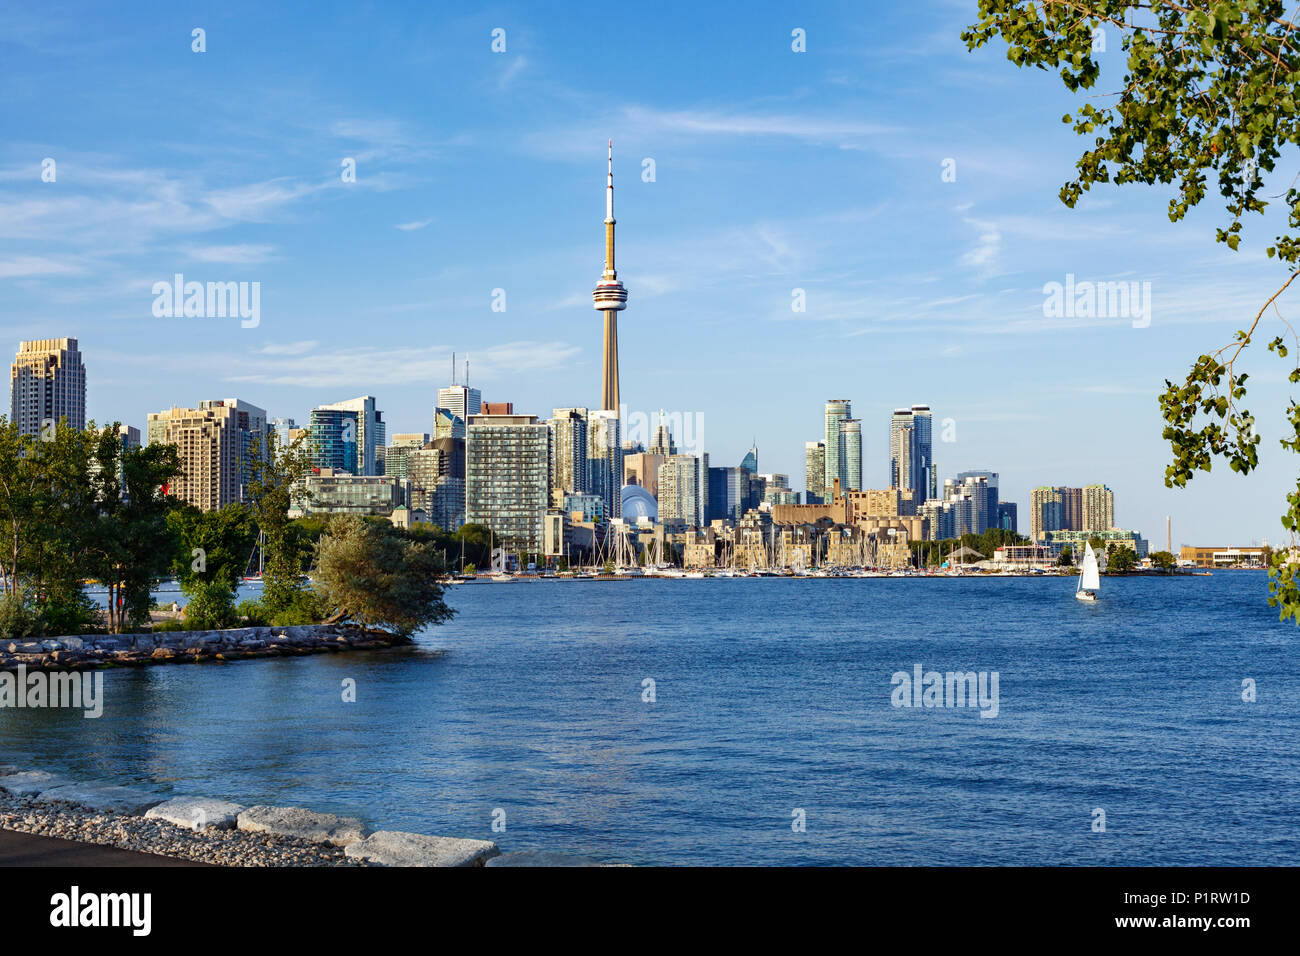 City of Toronto skyline from Trillium Park; Toronto, Ontario, Canada Stock Photo